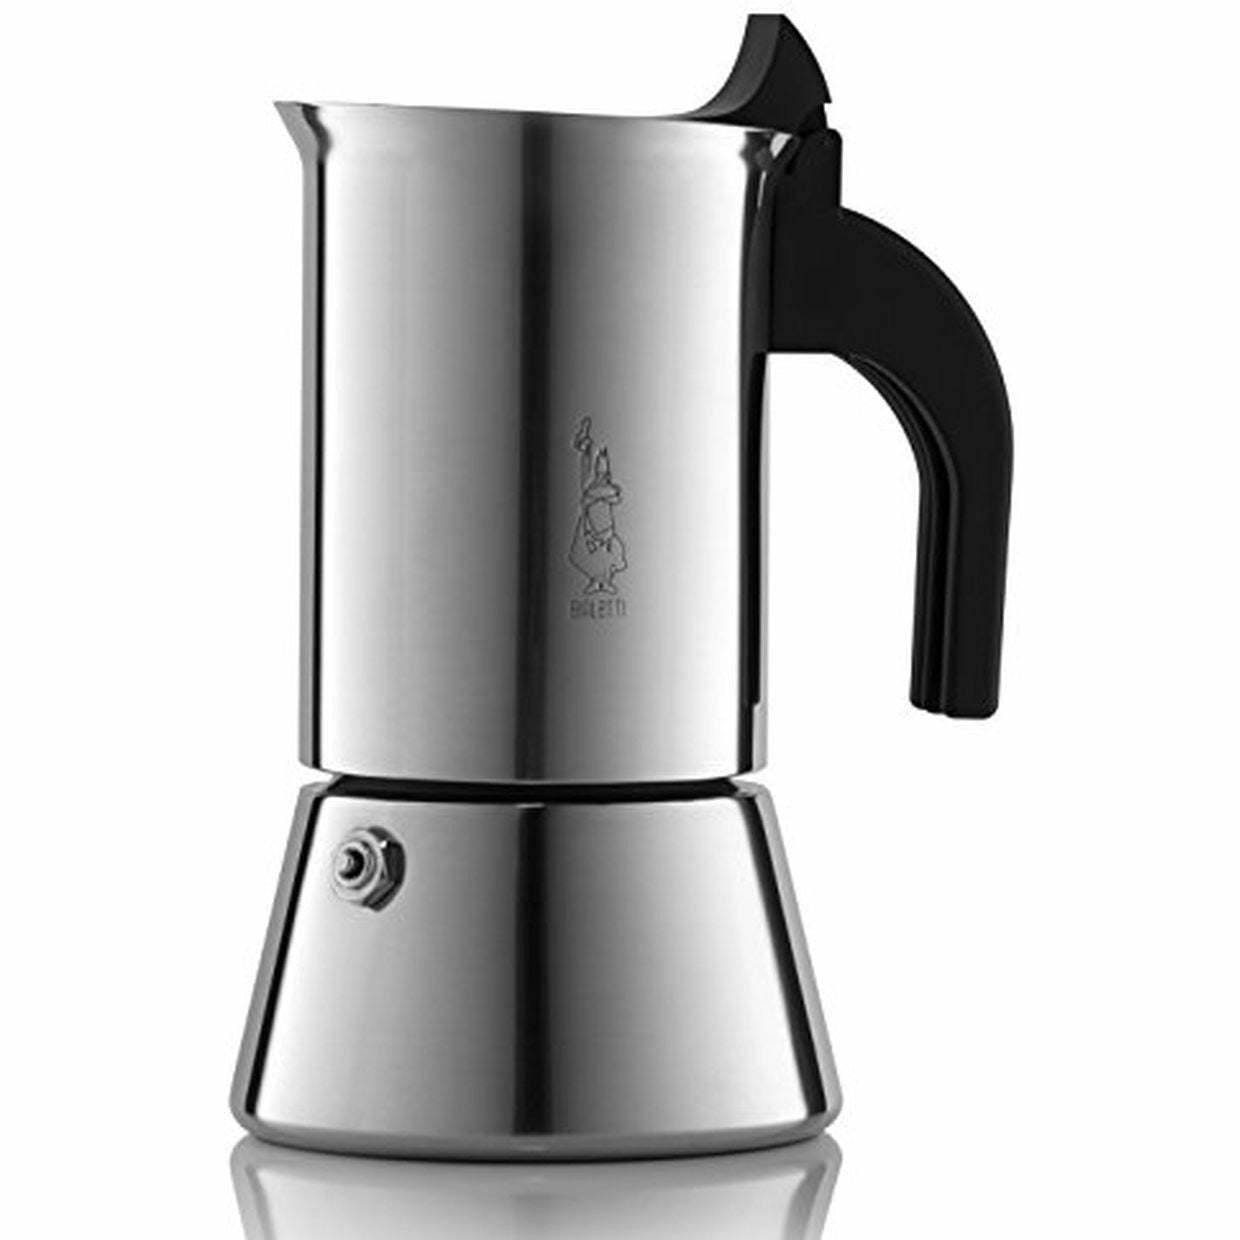 Bialetti Aluminum 6 Cup Stovetop Steamer Espresso Coffee Maker